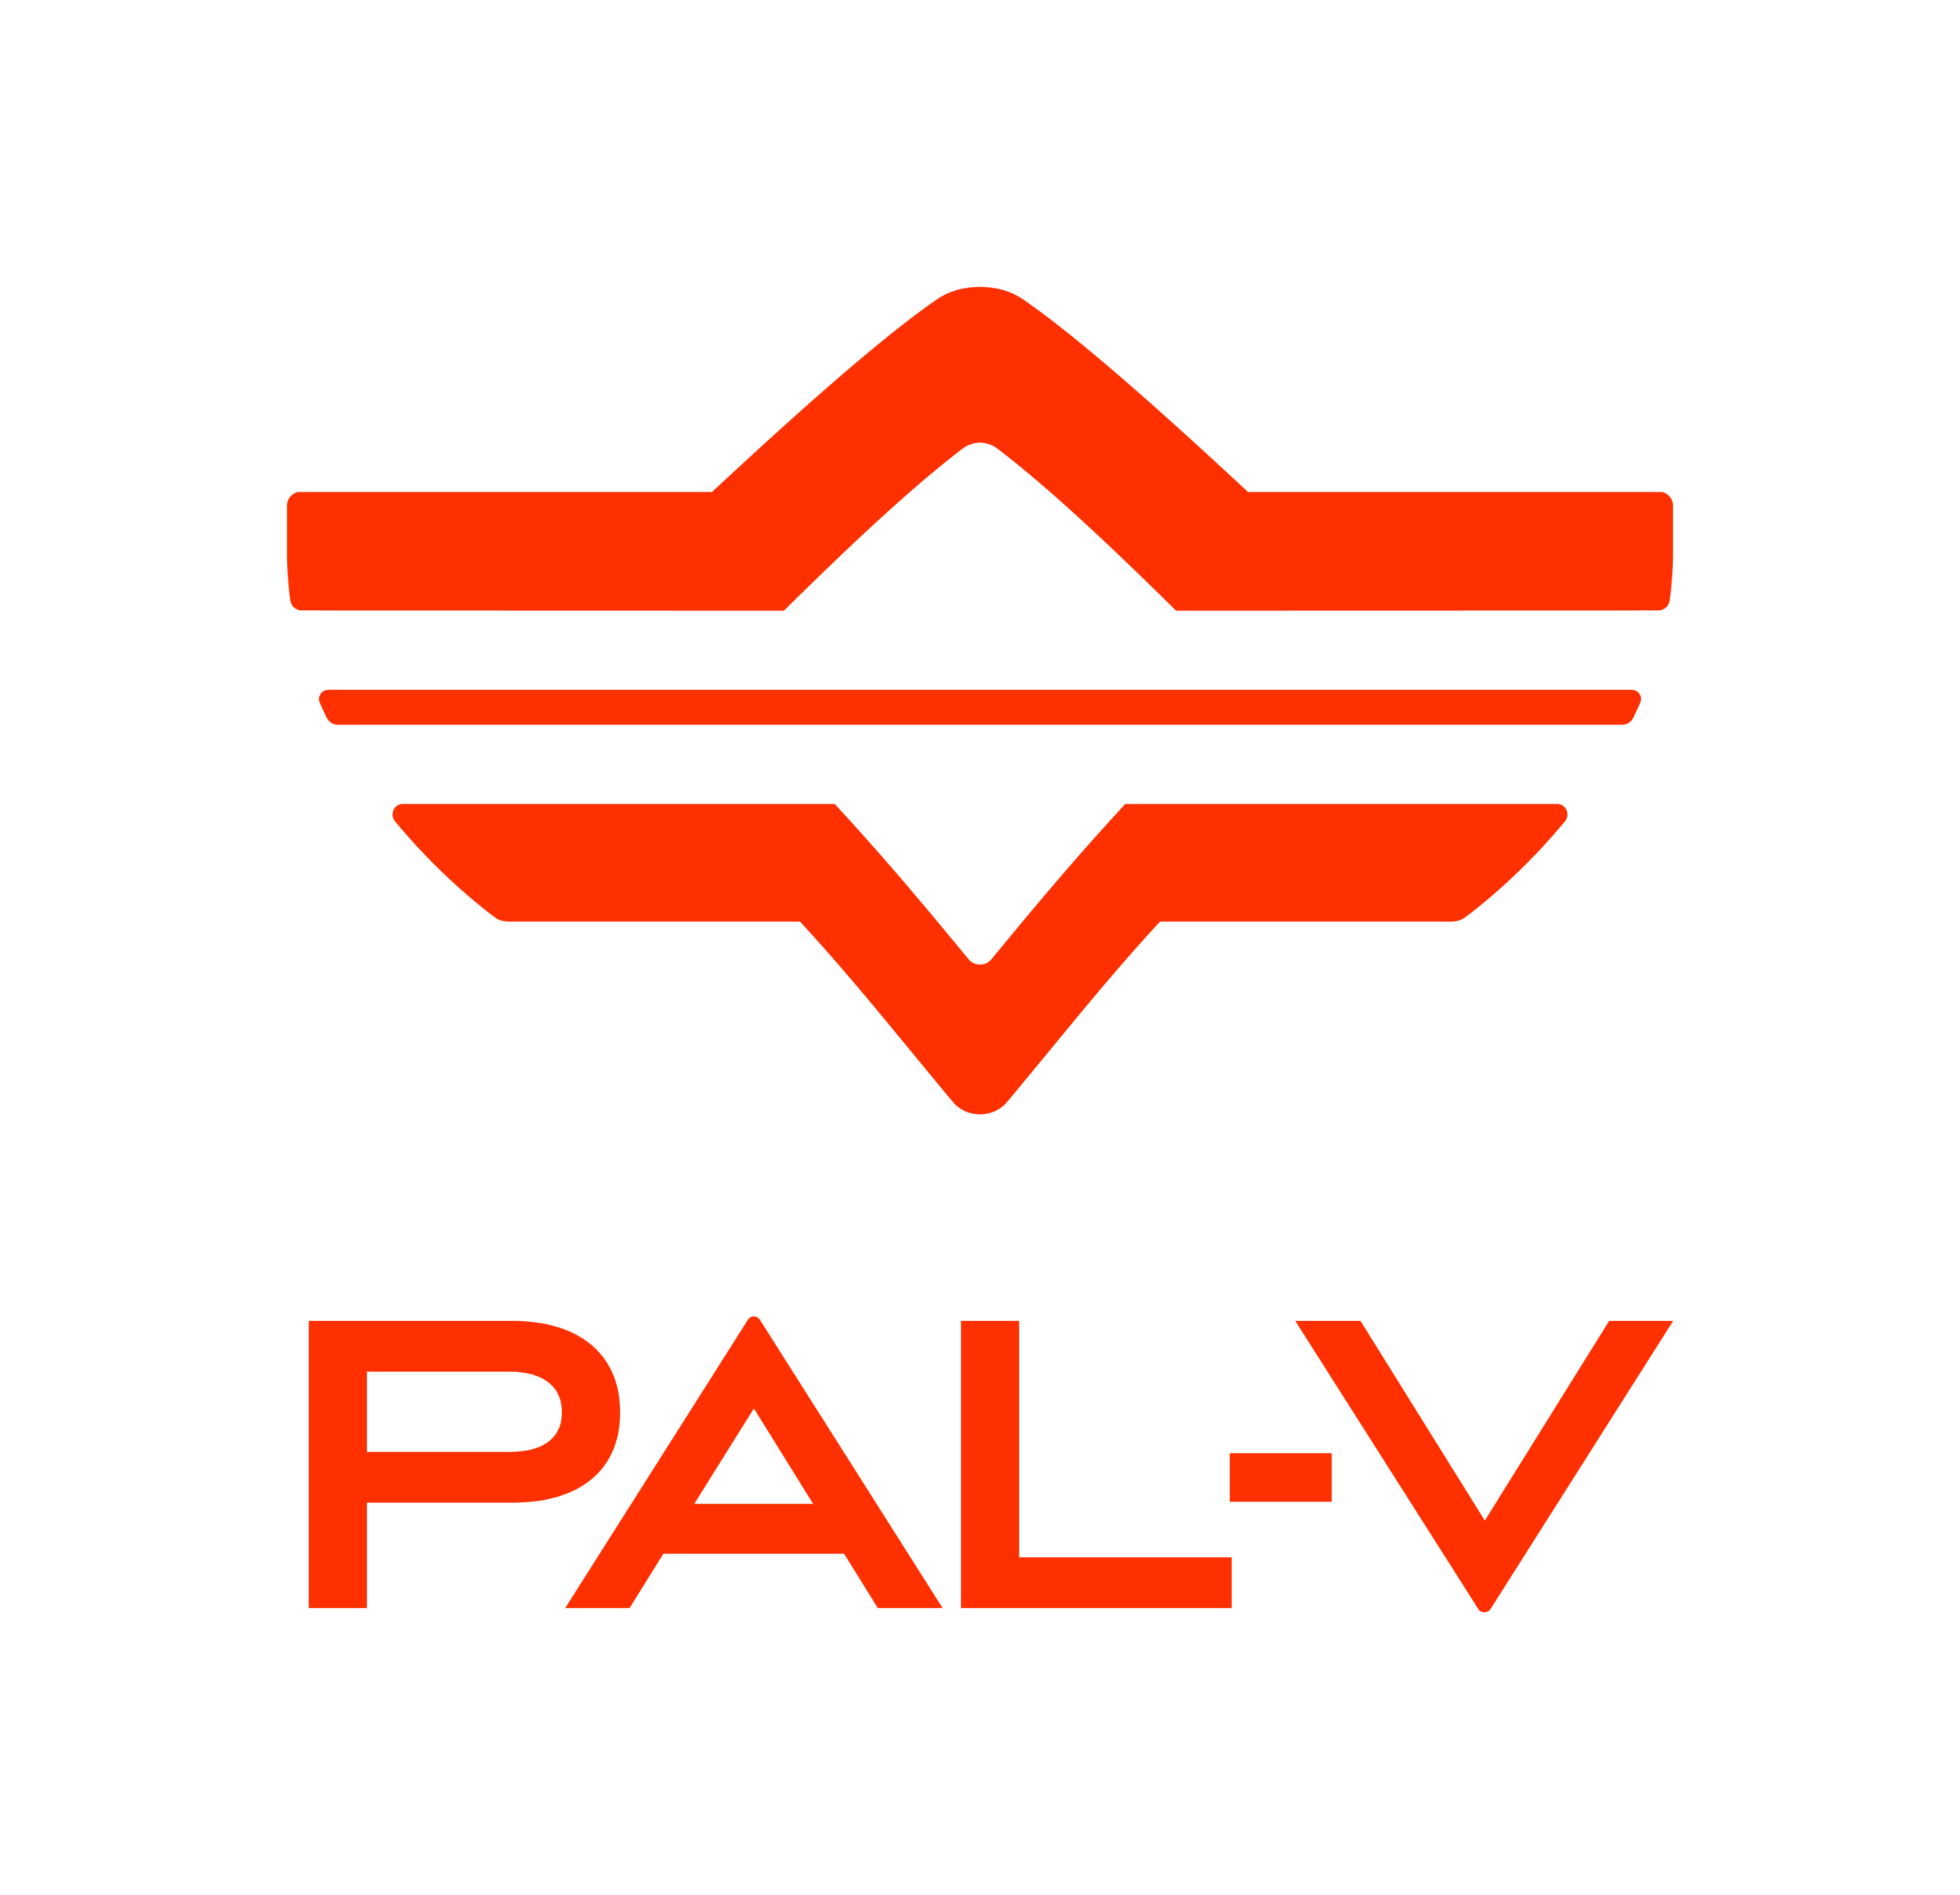 Pal-V